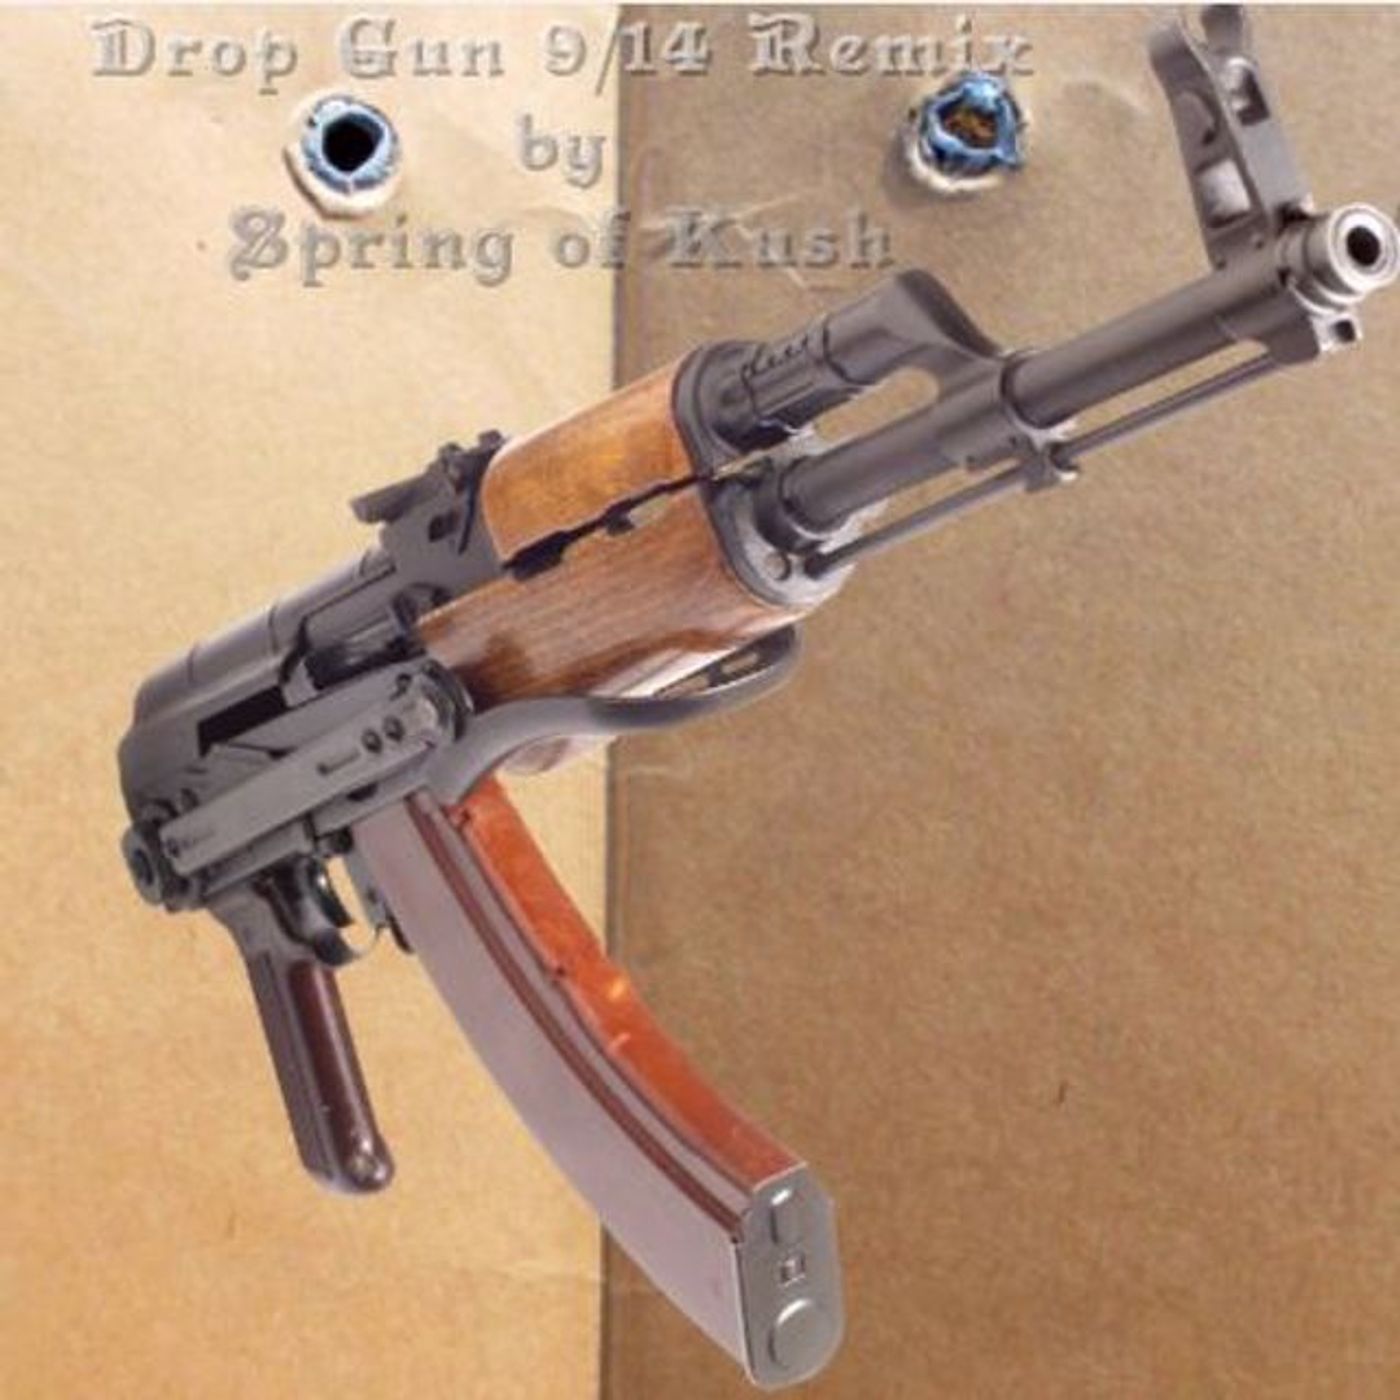 Spring of Kush - 9_14 Drop Gun Remix (mastered)